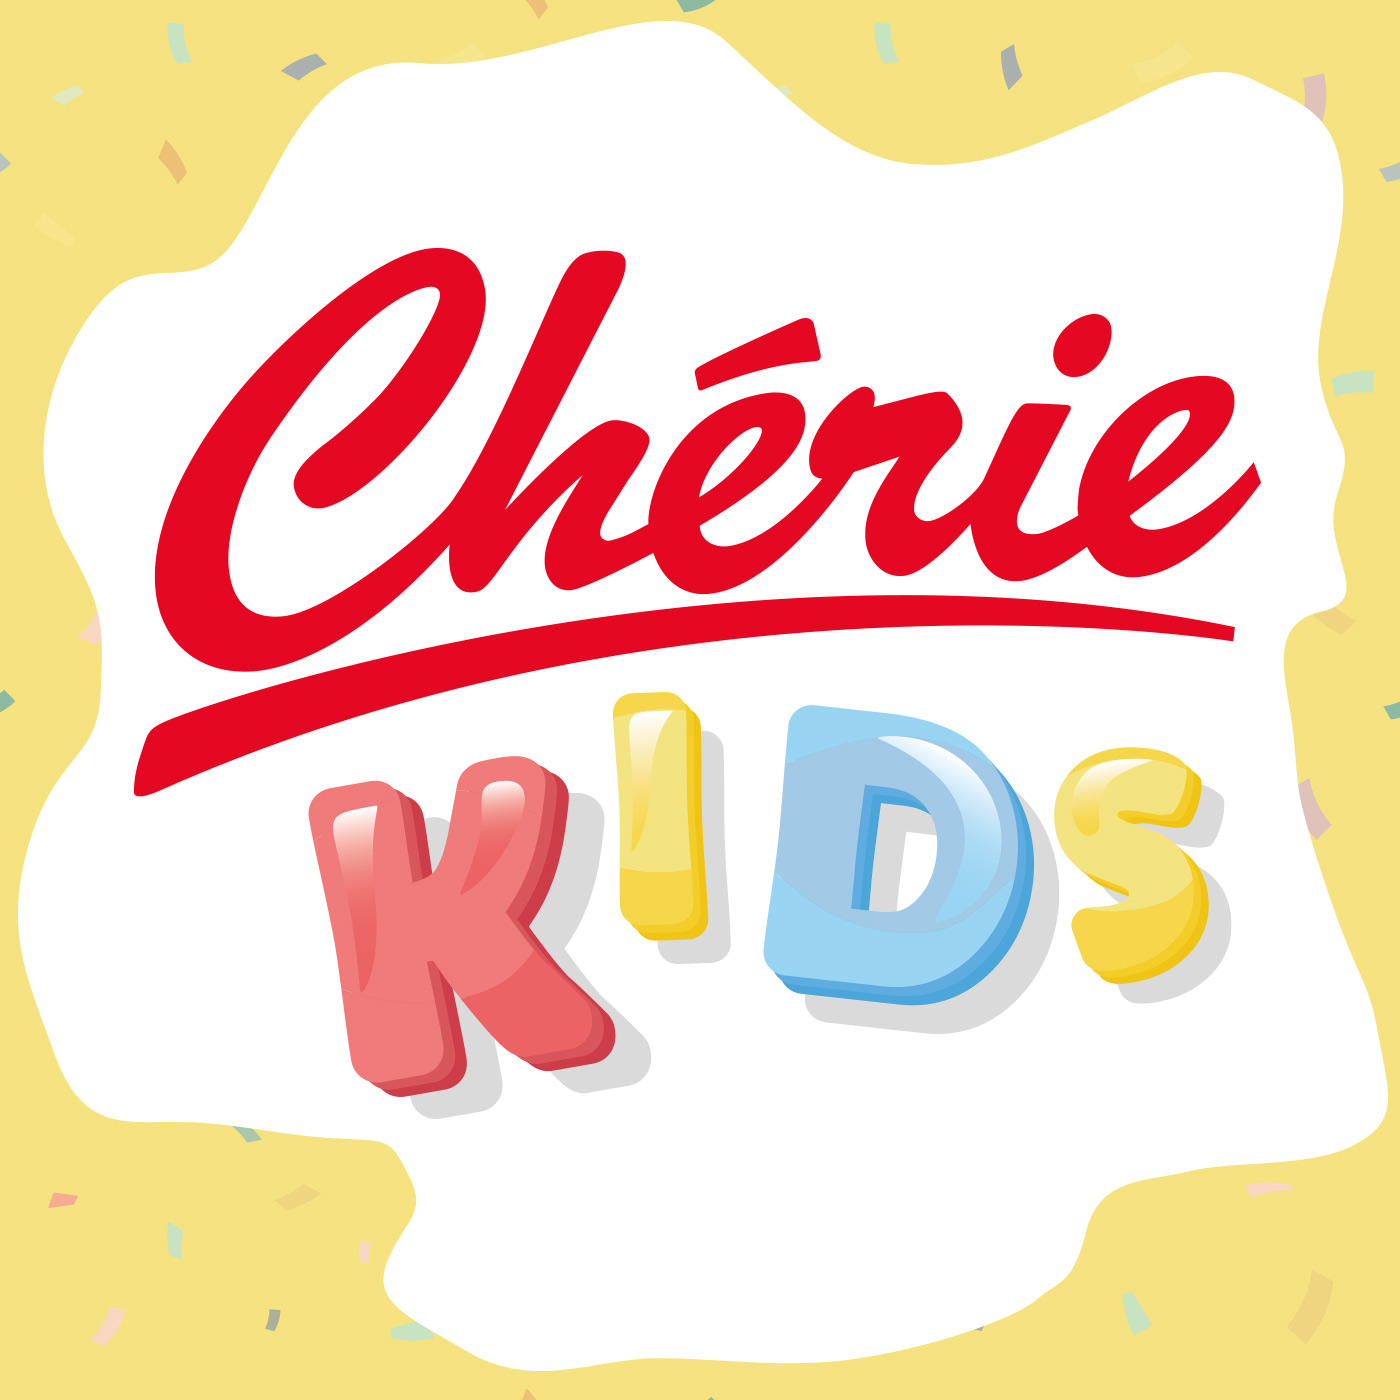 Image 1: Le Cherie Kids